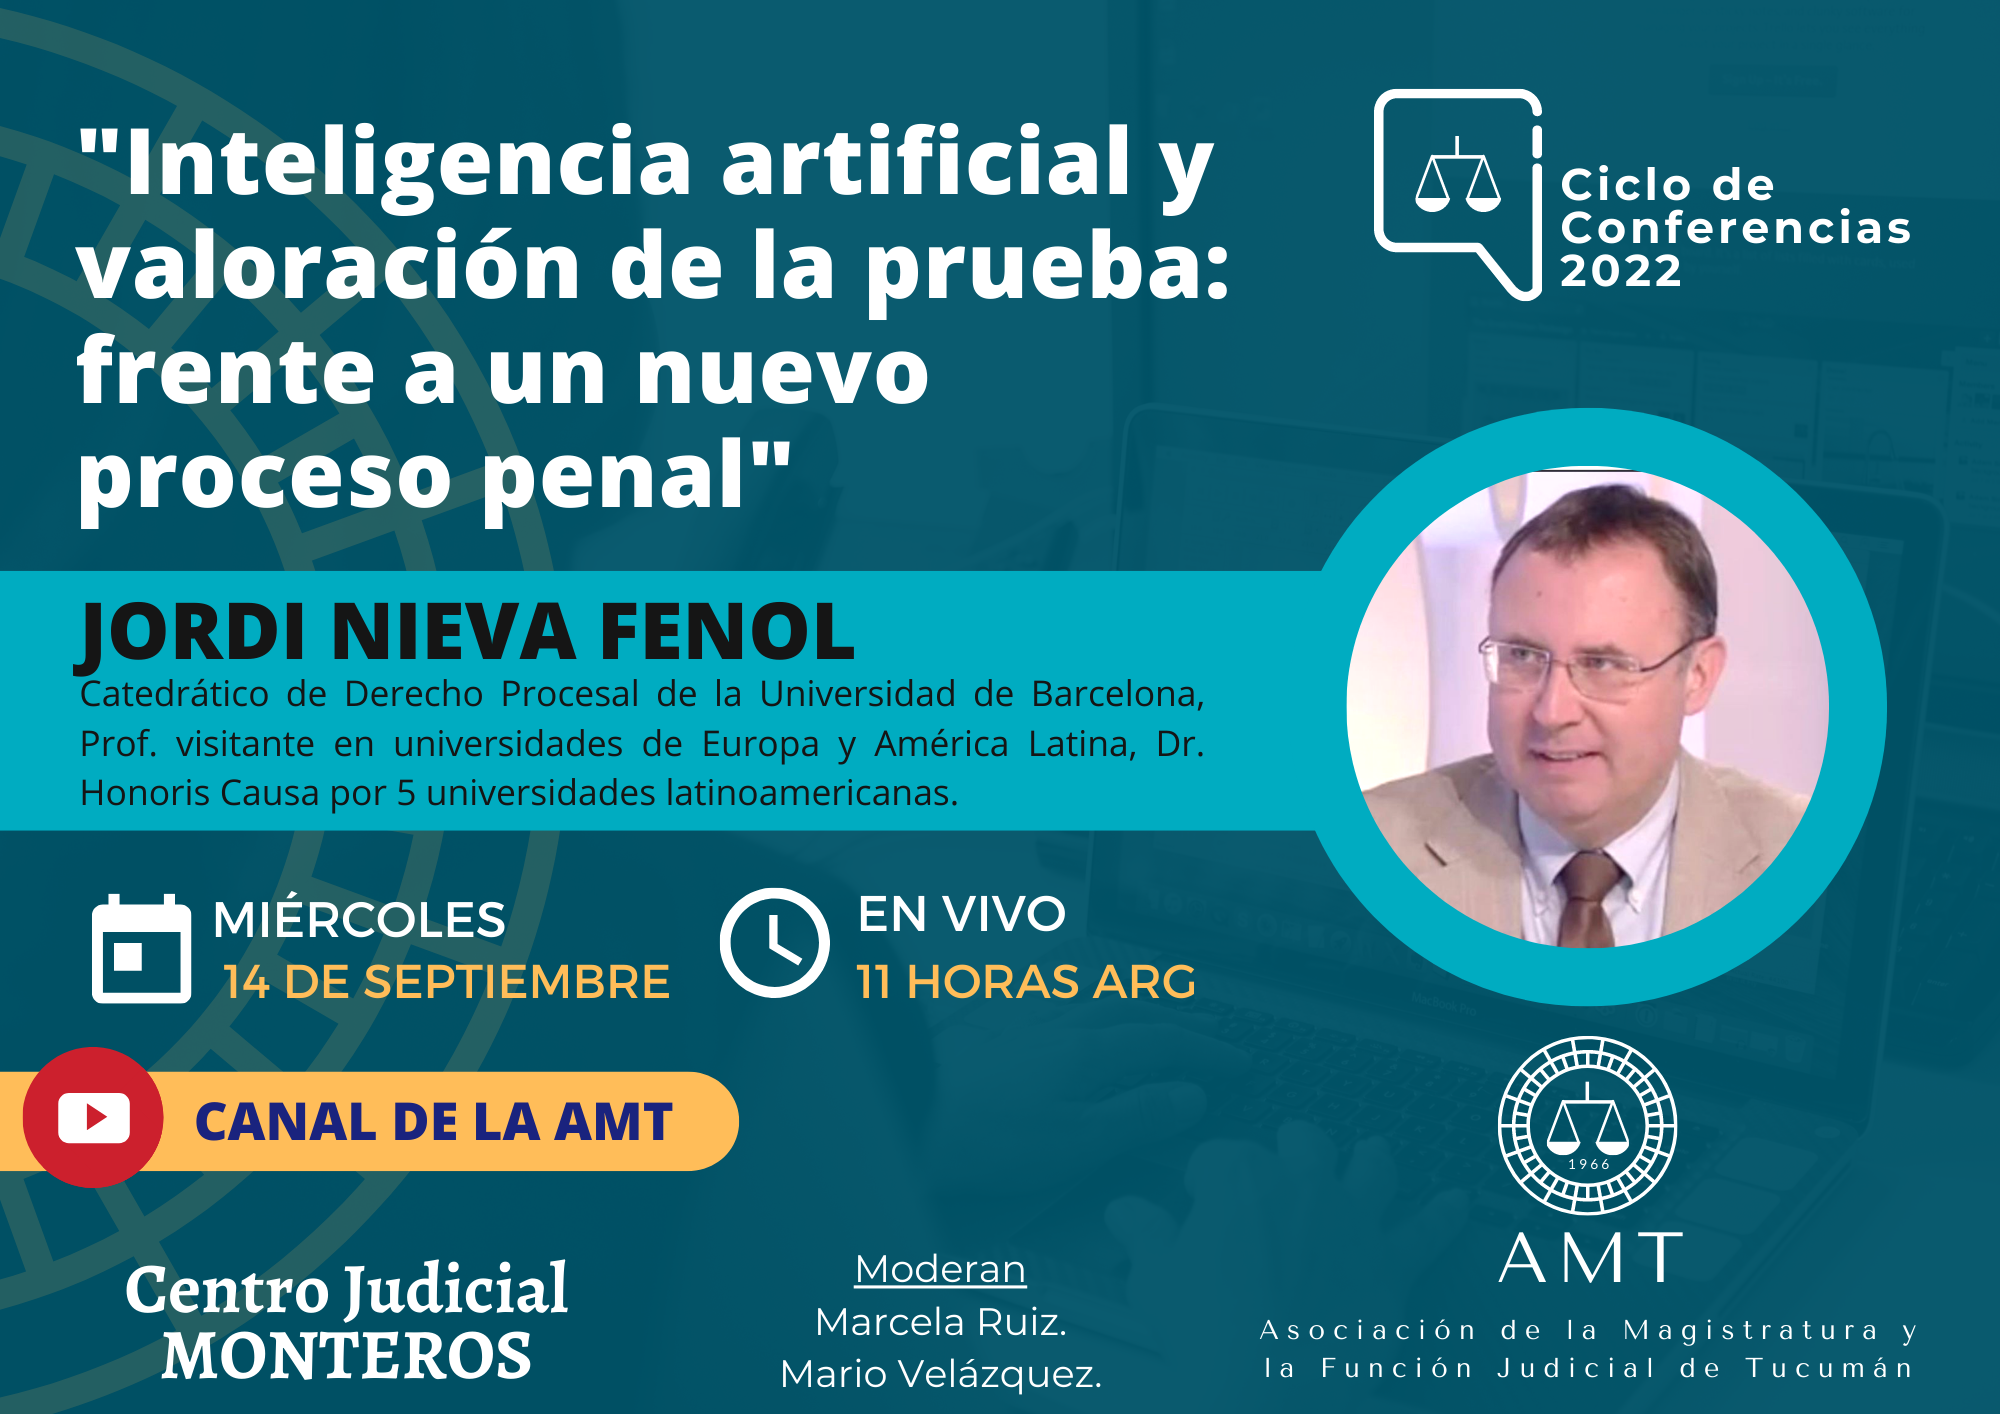 Vuelva a ver la conferencia de Jordi Nieva Fenoll «Inteligencia artificial y valoración de la prueba»